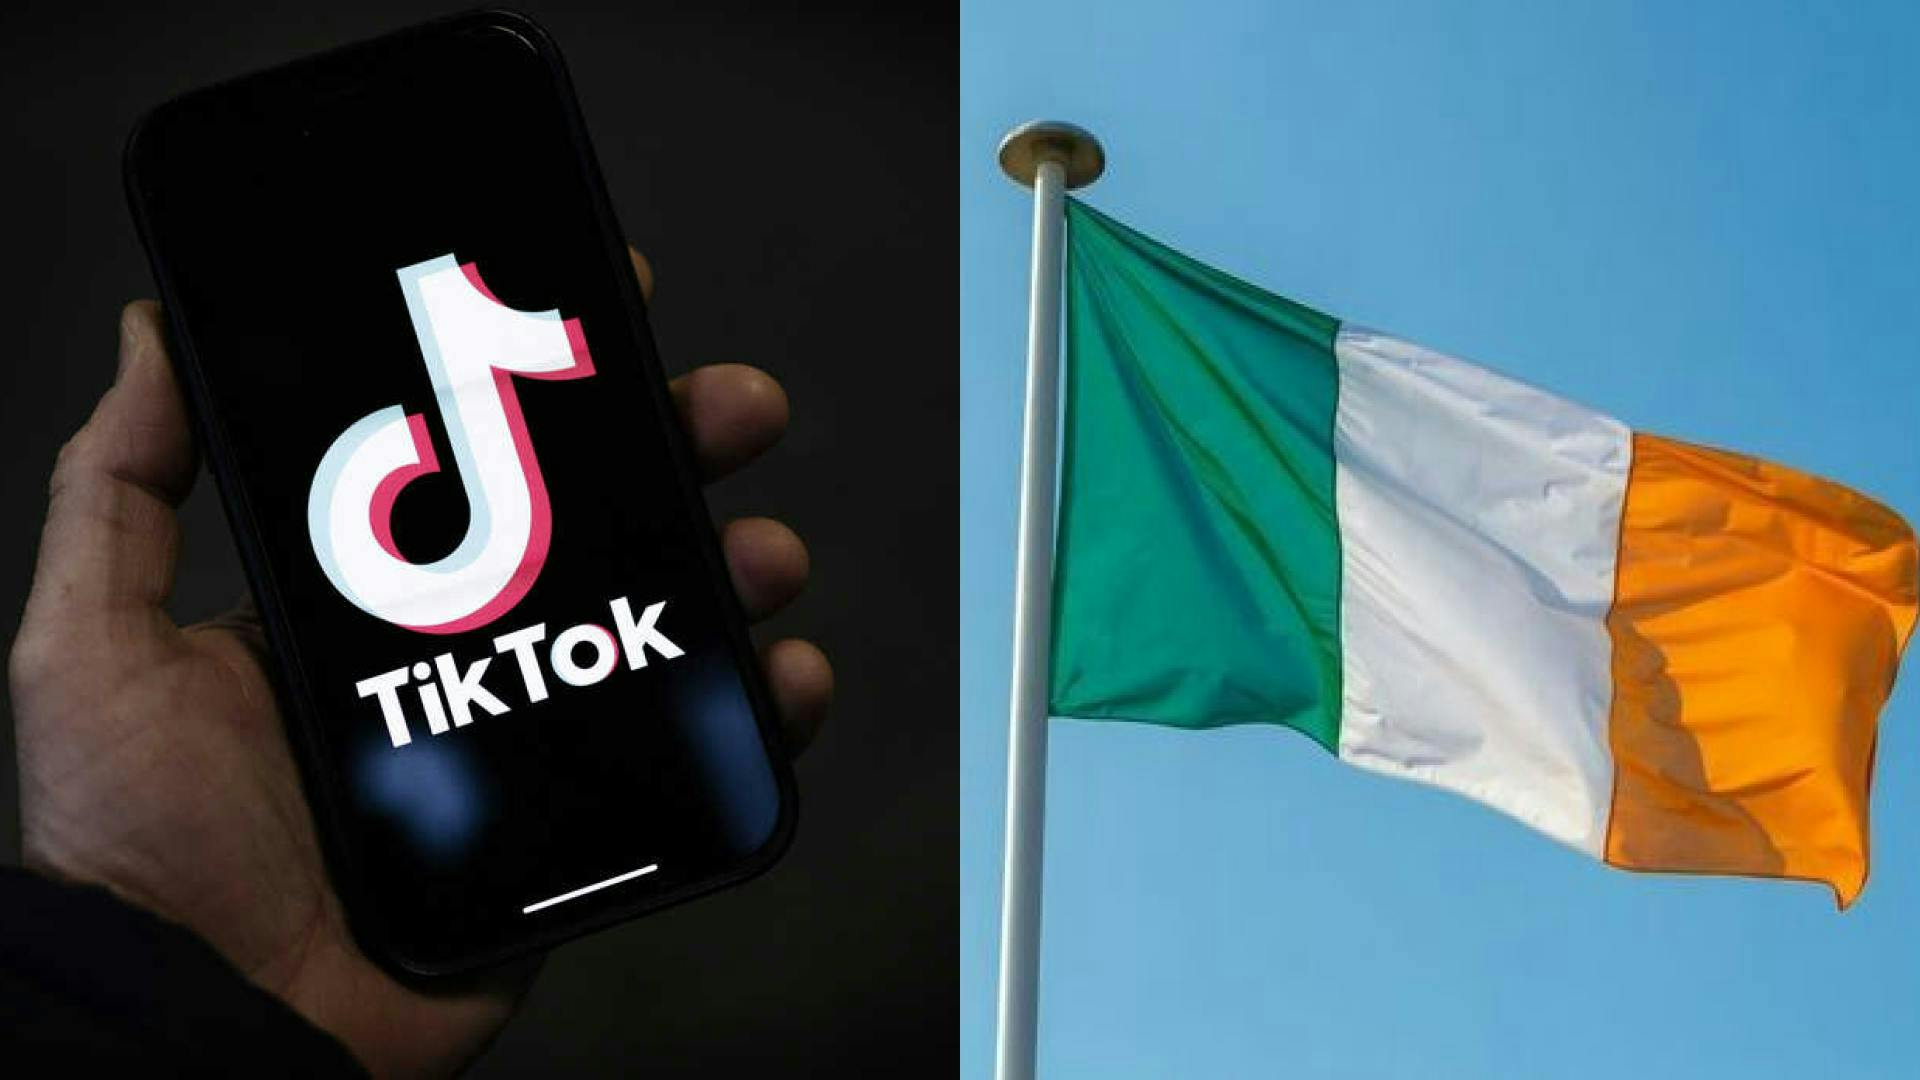 TikTok Announces Layoffs in Ireland